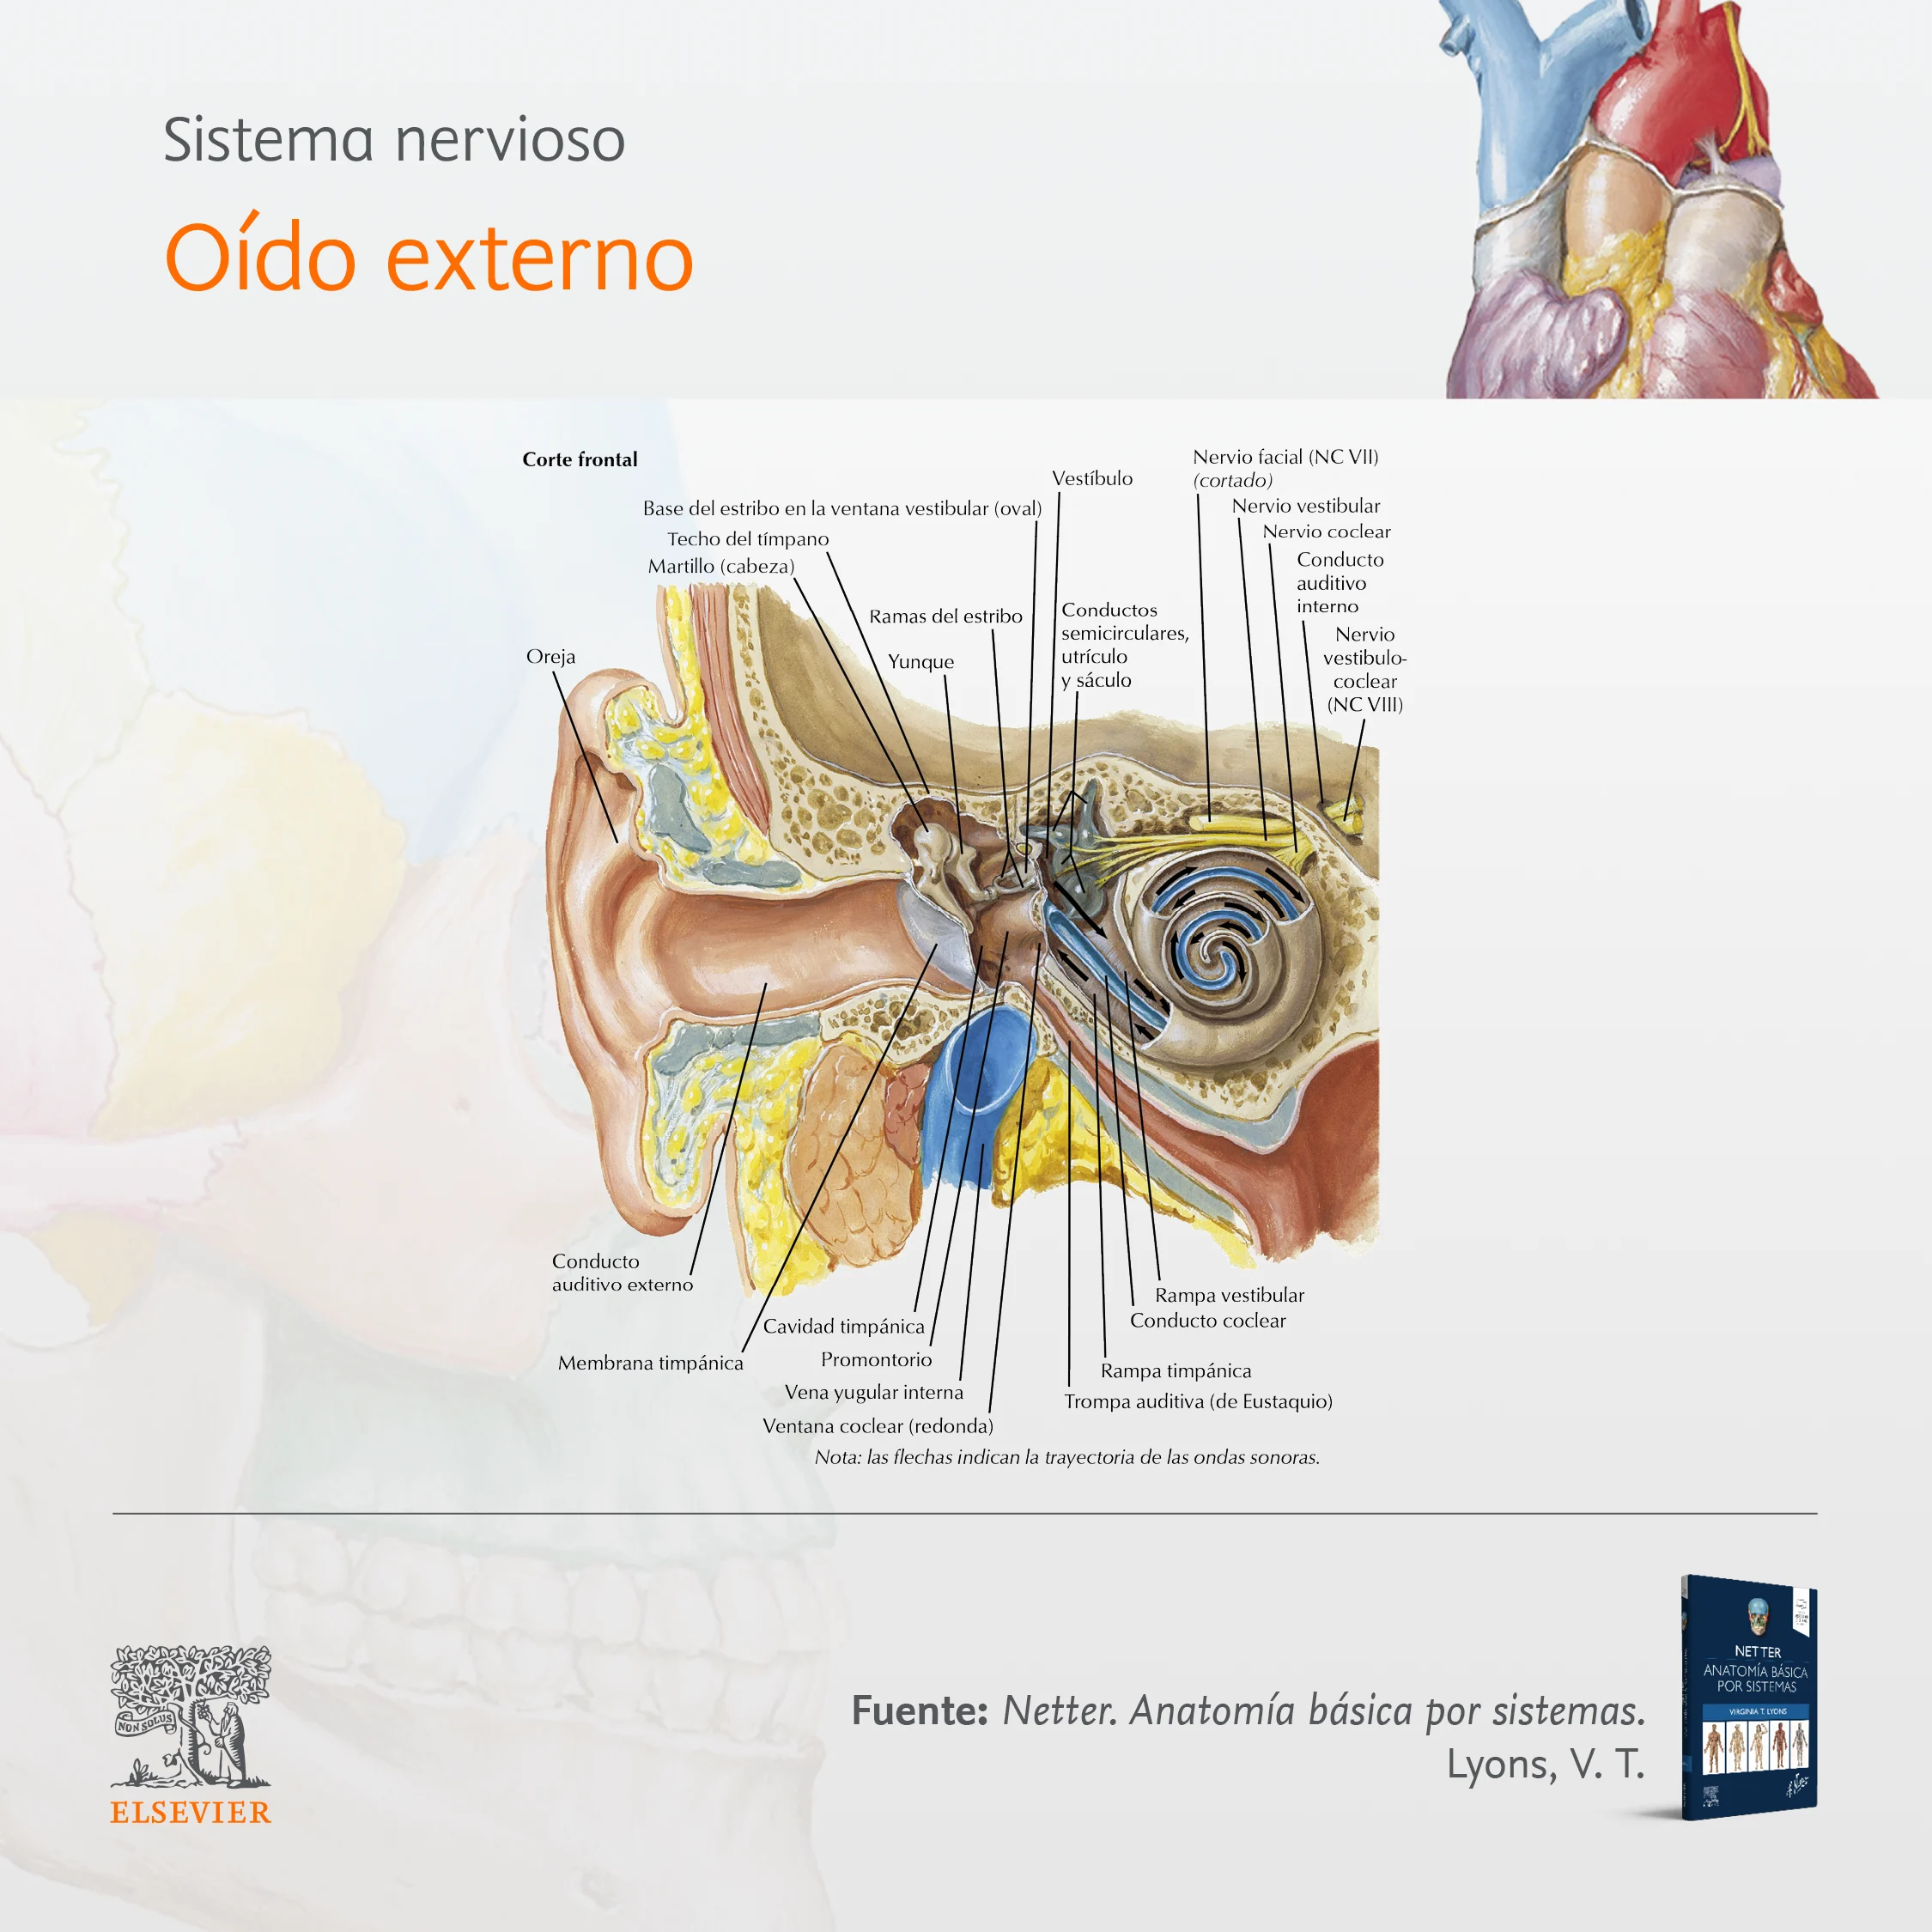 Sistema nervioso - Oído externo